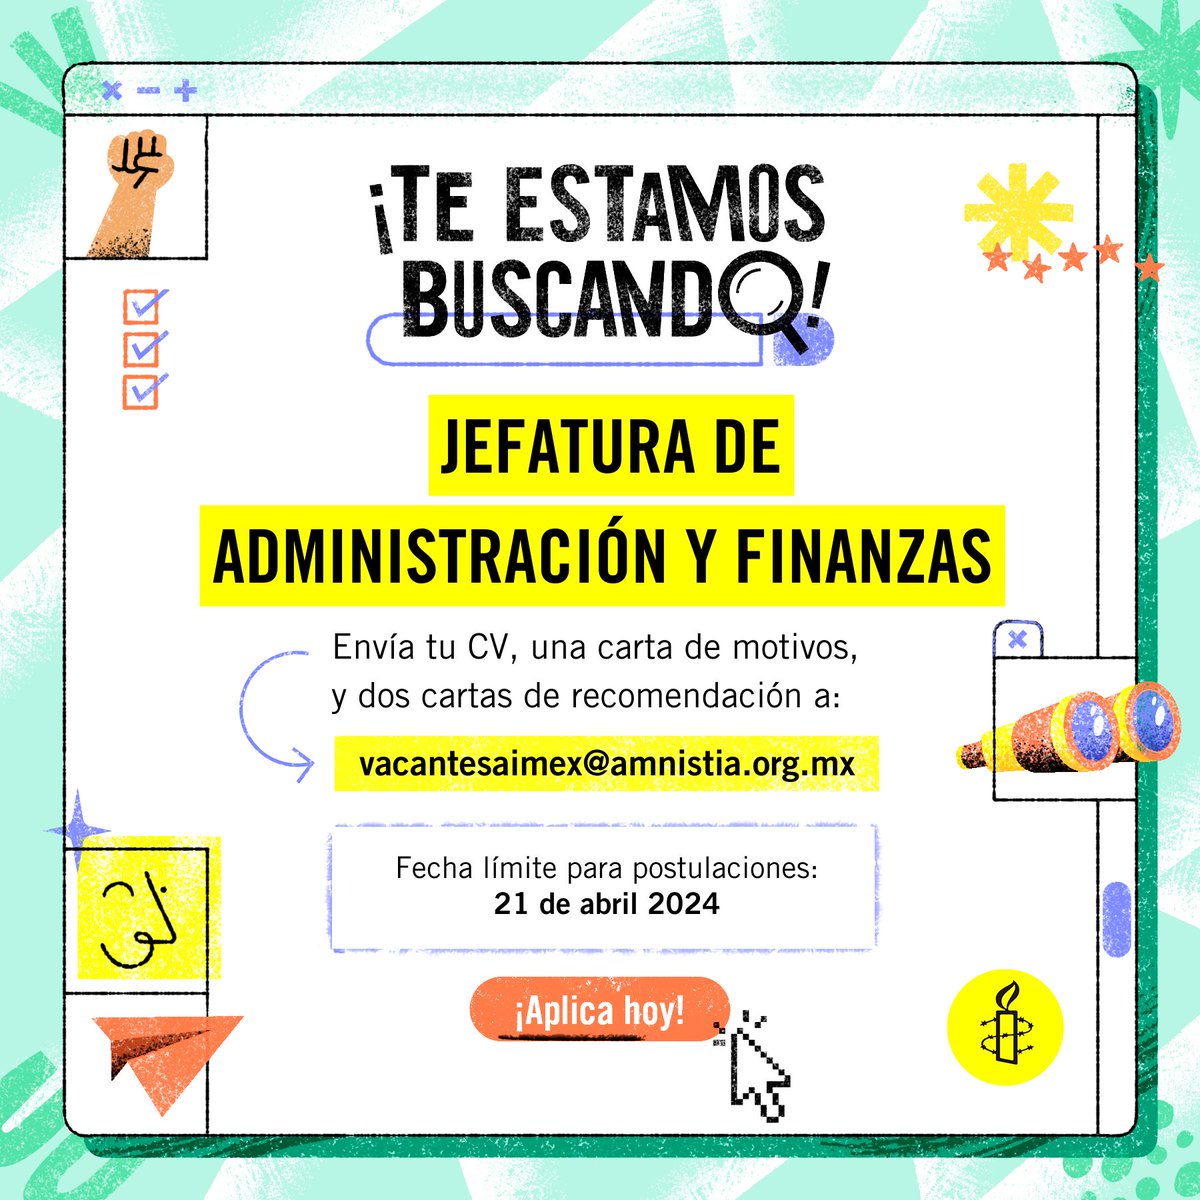 #VacantesAmnistía🕯️Buscamos a la persona que mantenga la salud financiera de la sección mexicana de Amnistía Internacional. 💛 ¡Aplica hoy! 📆 Fecha límite: 21 de abril 2024 💼 Más información: amn.st/6014ZQ4Q6